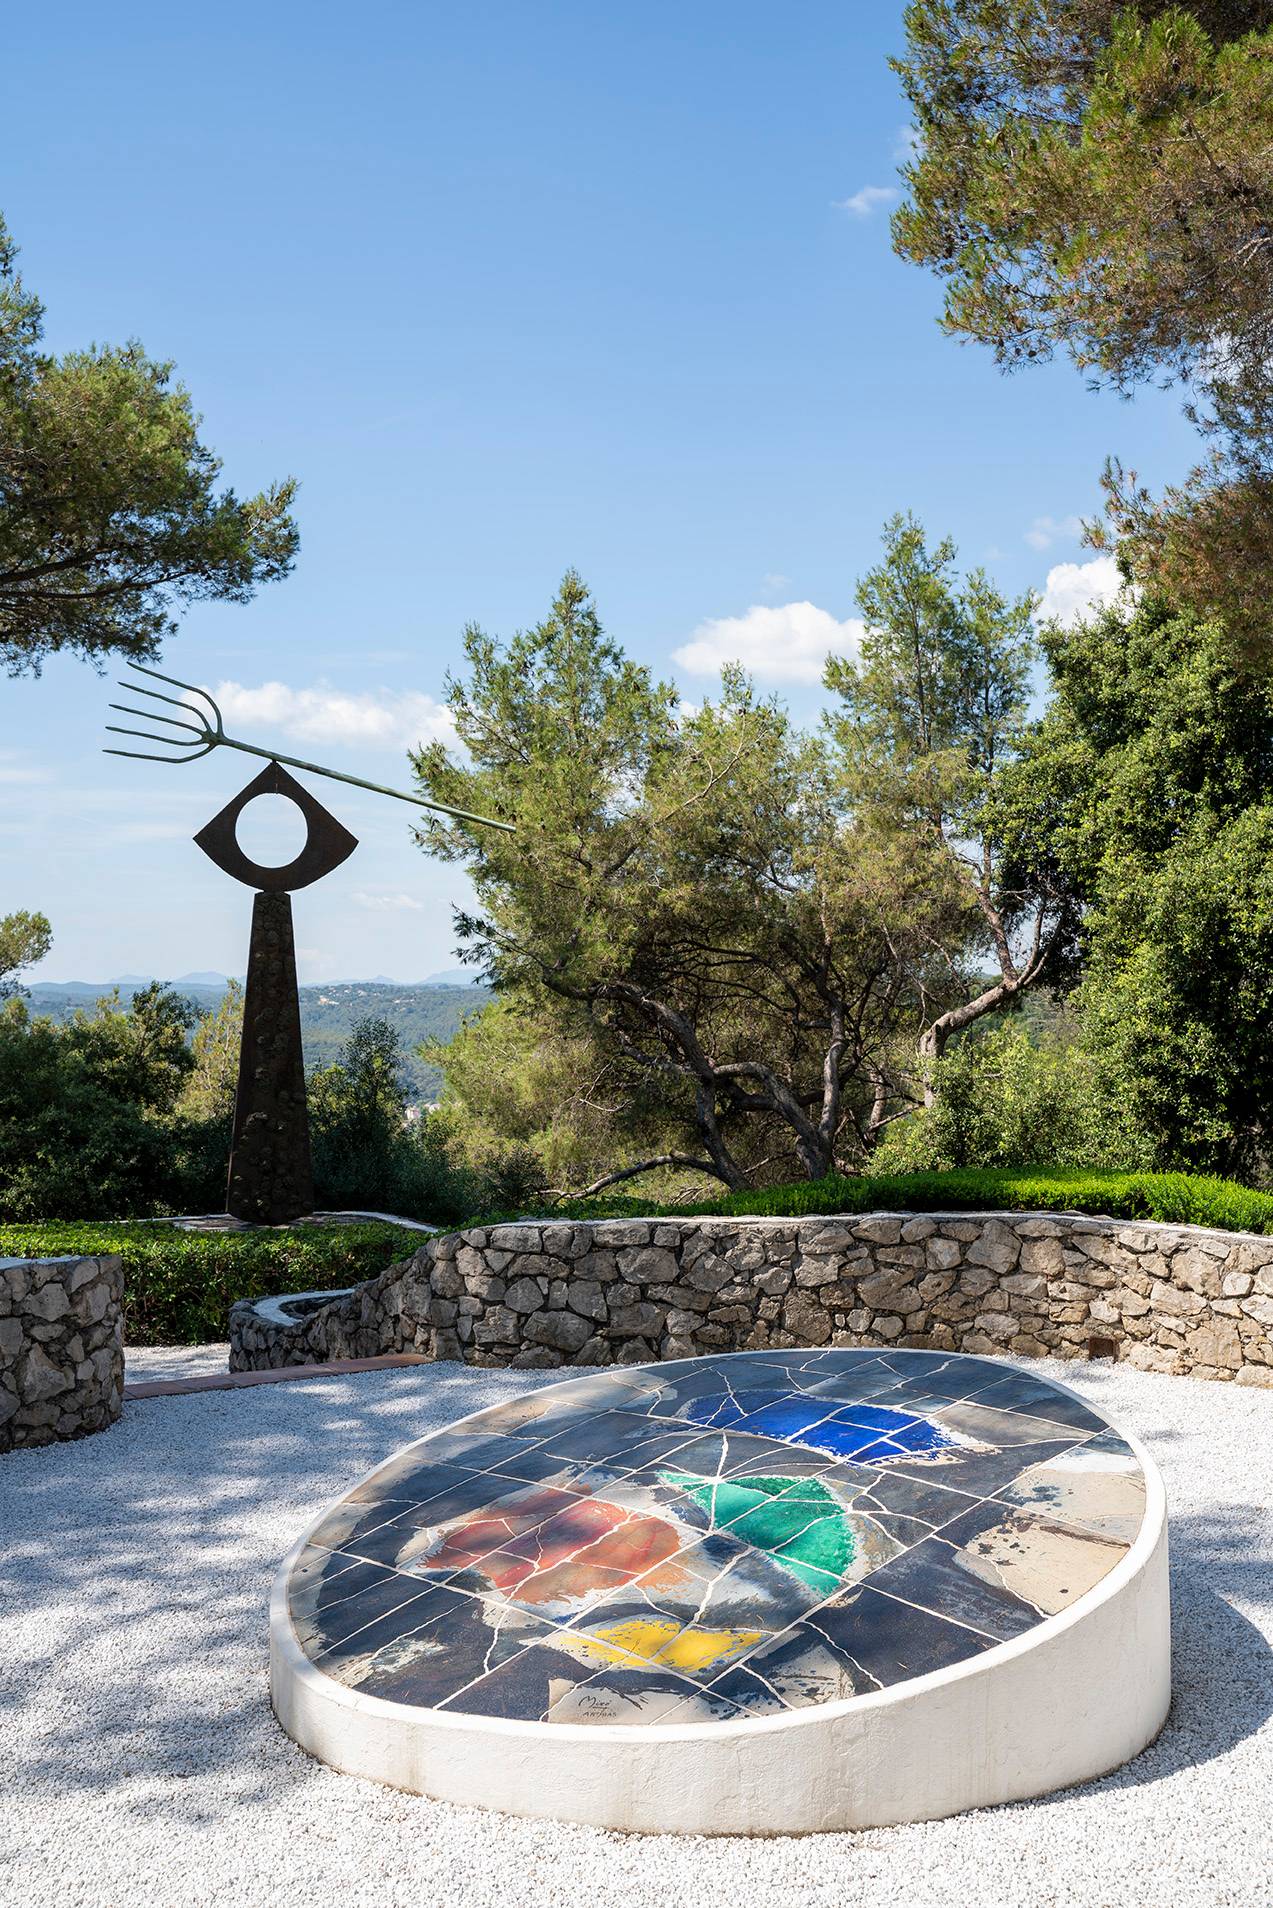 Joan Miró, “Le cadran solaire” (1973), Saint Paul de Vence, Labyrinthe Miró. 
© Fondation Maeght